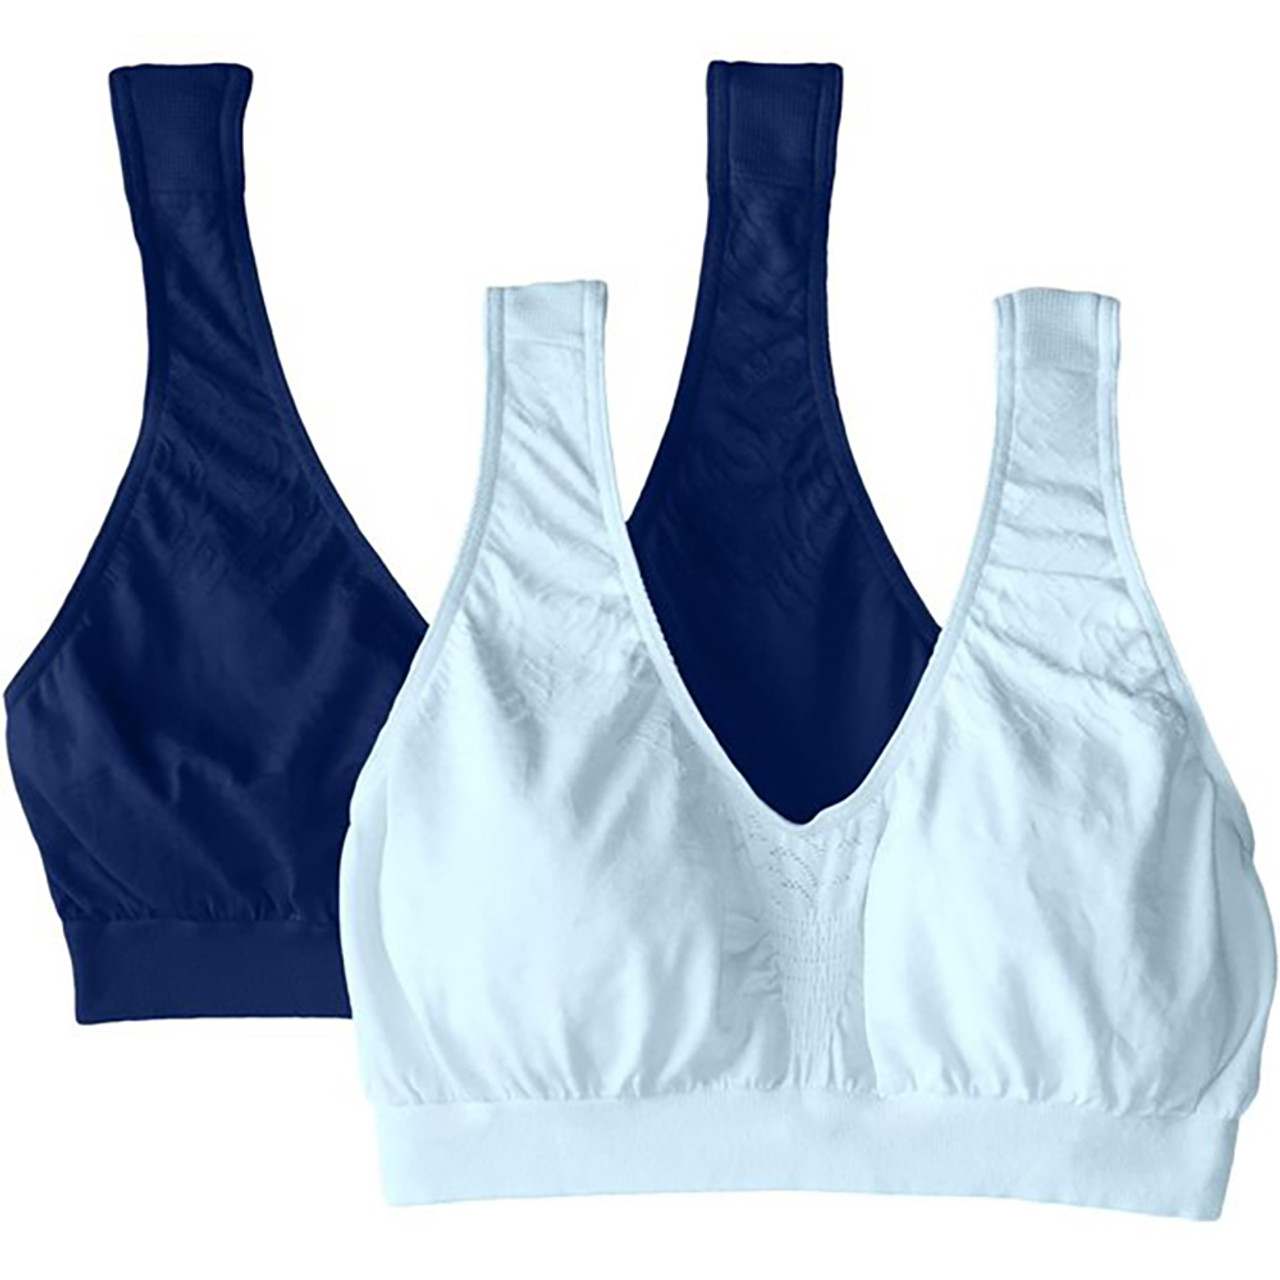  Bali® Women's Comfort Revolution® Crop Top Bra (4-Pack) product image